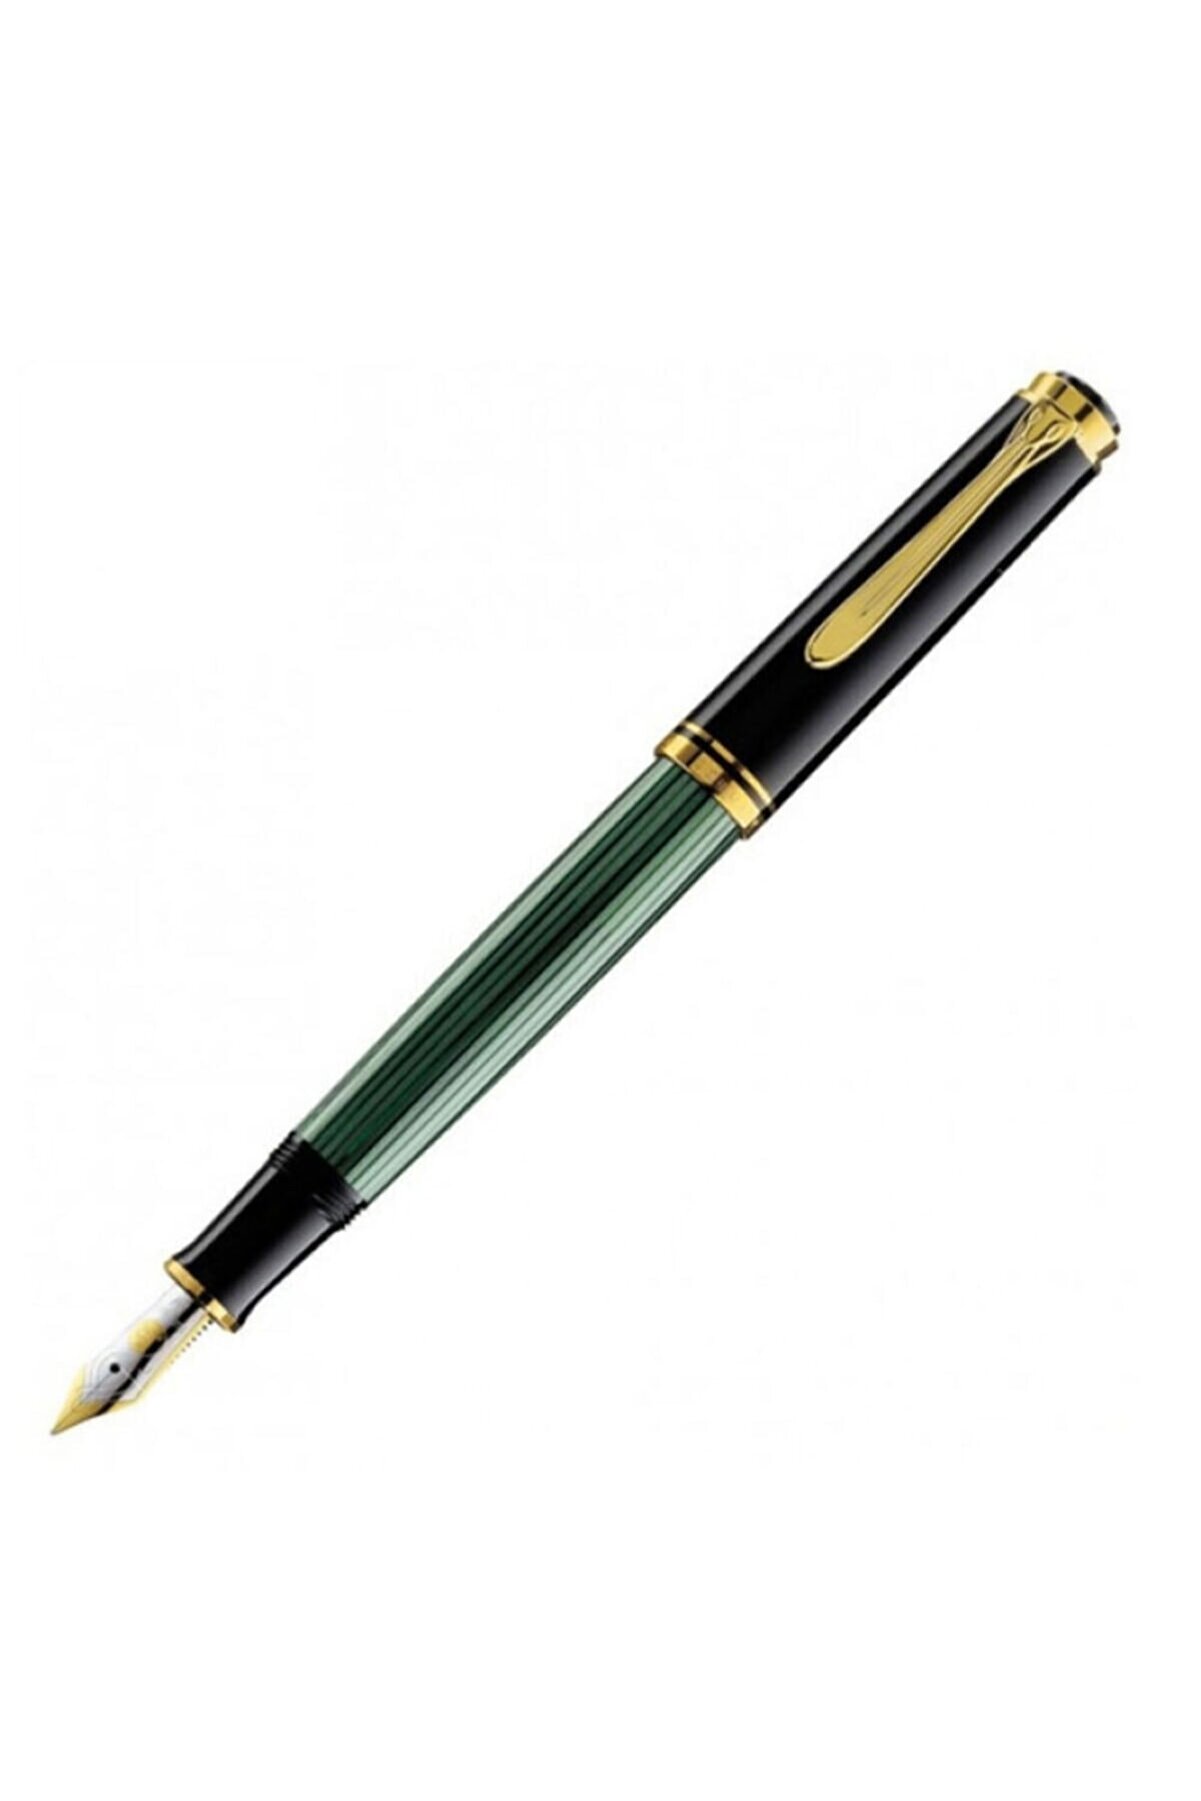 Pelikan Souveran Serisi Yeşil Siyah Sedefli Dolma Kalem M400